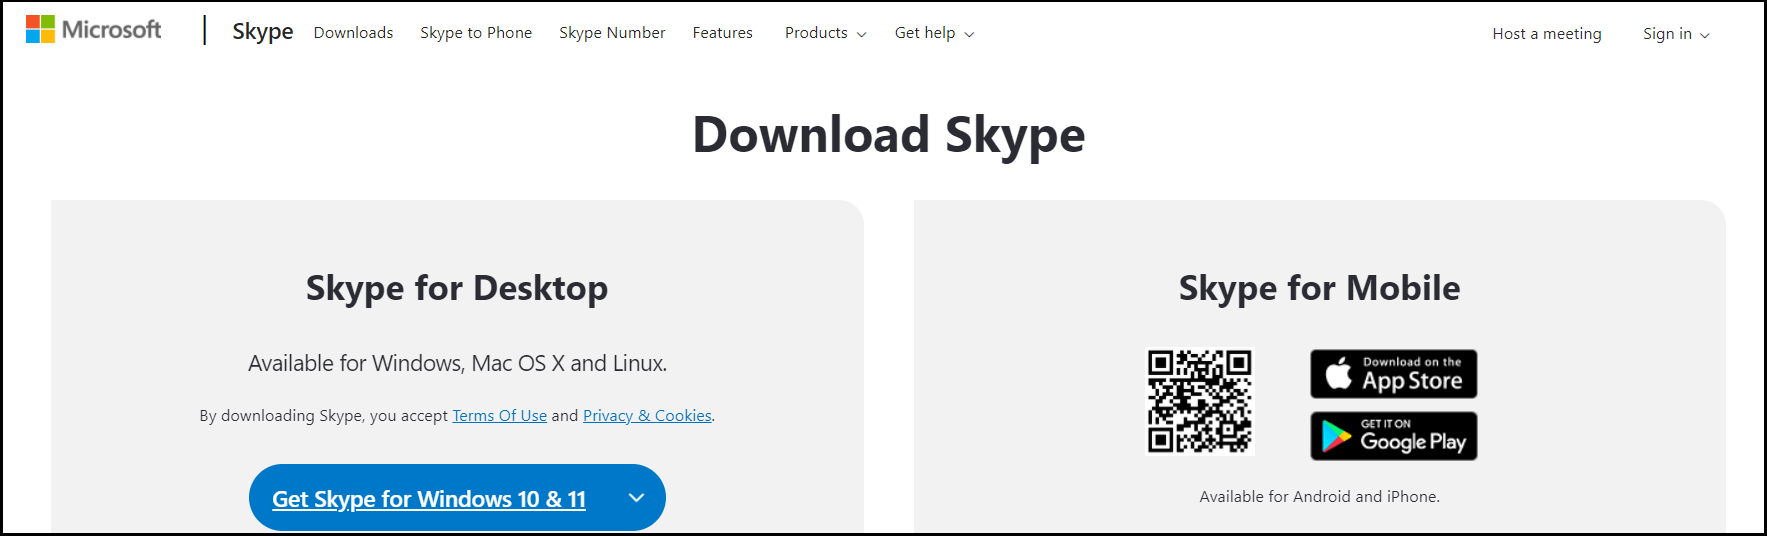 Página web de Microsoft para descargar el videochat de Skype